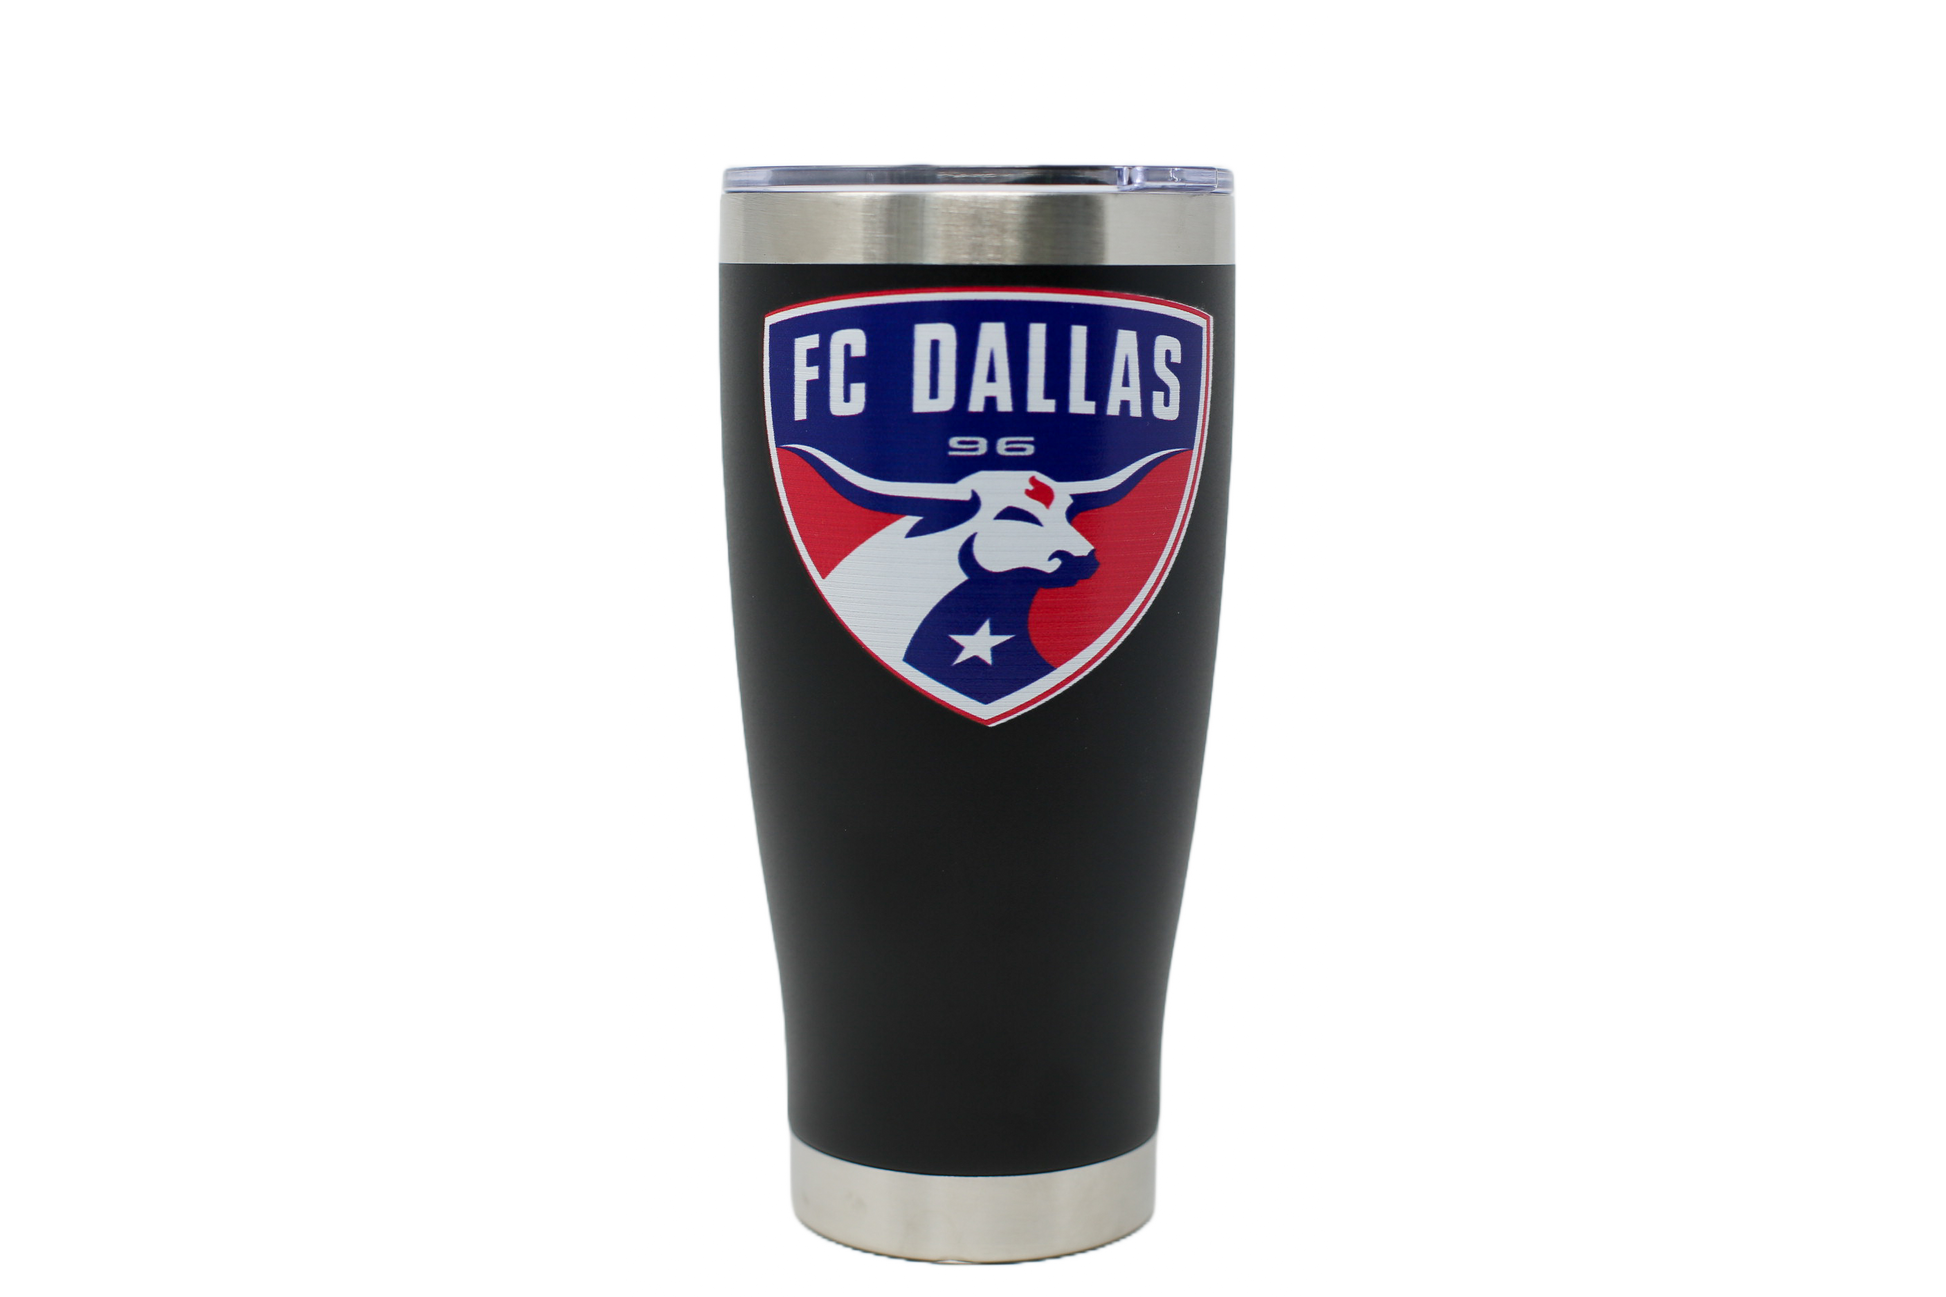 FC Dallas Accessories, FC Dallas Gifts, Socks, Watches